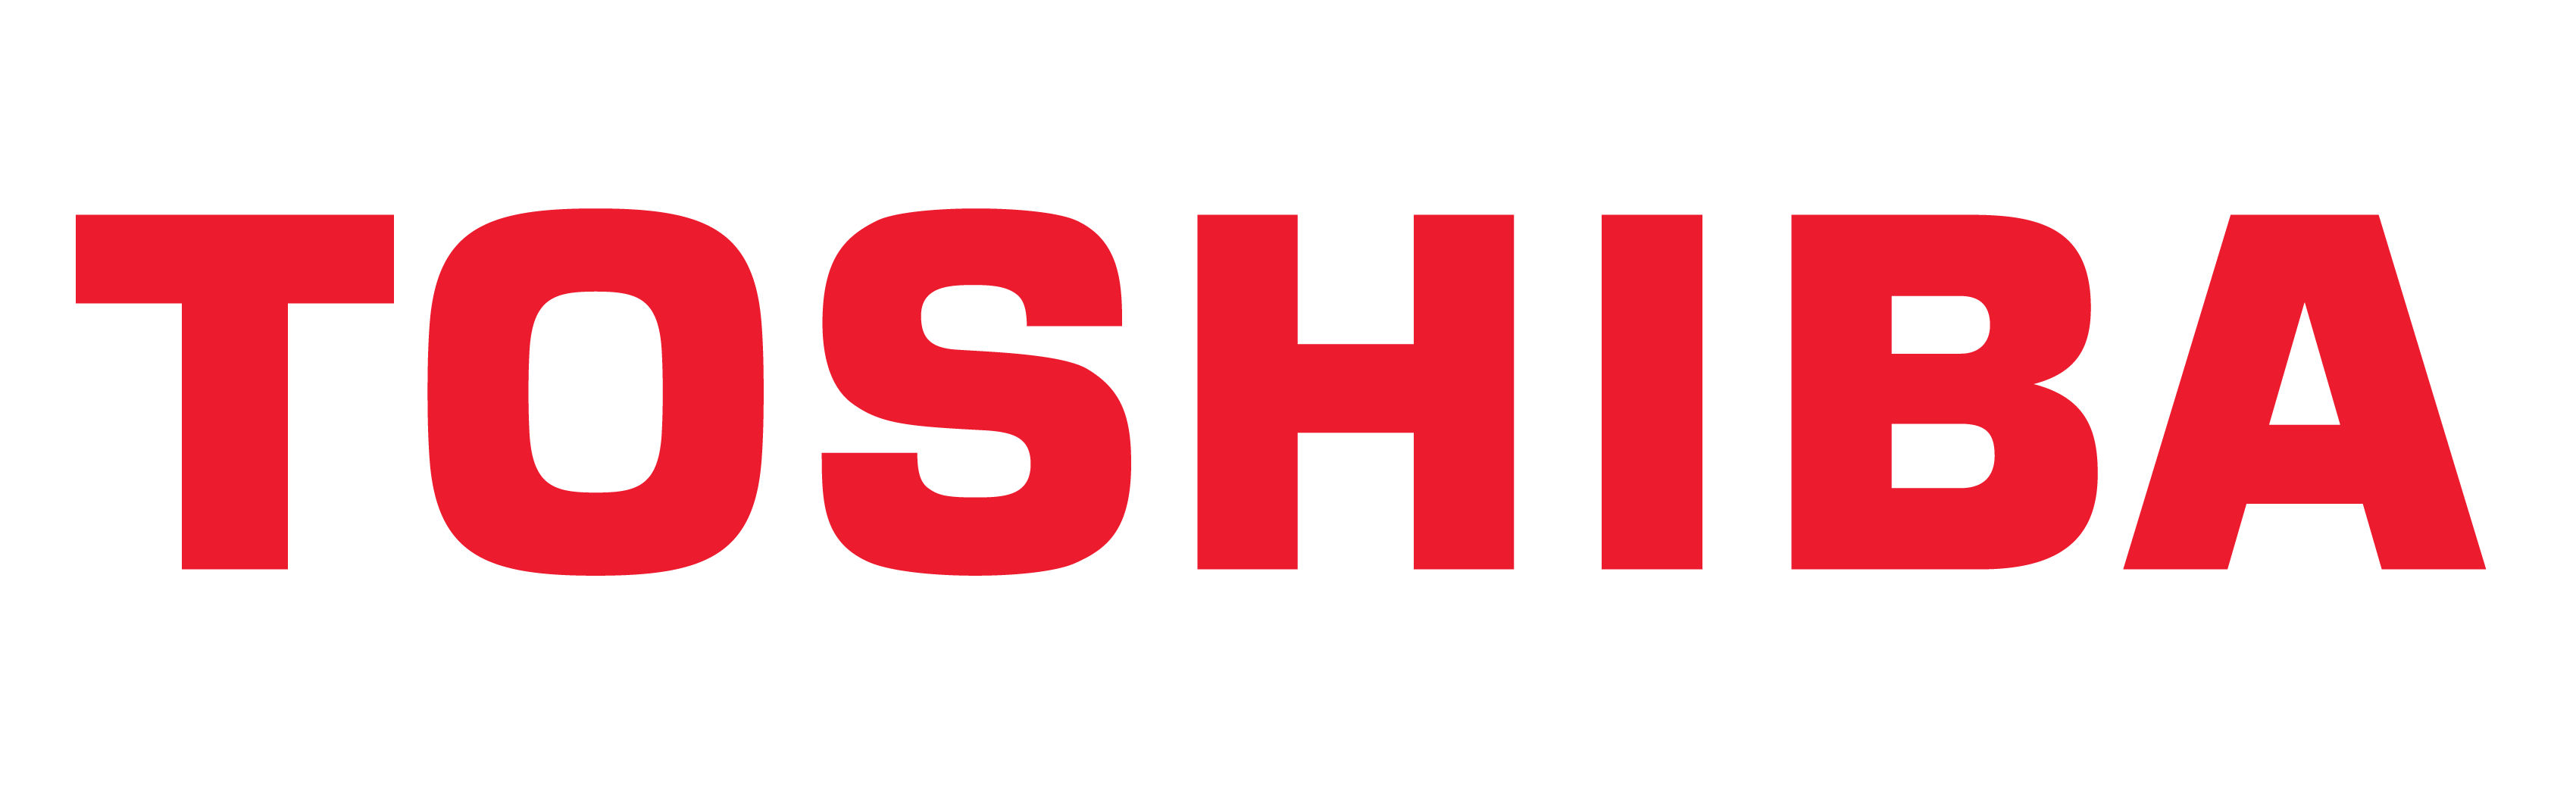 Toshiba Logosu, Toshiba Sembolü, Anlamı, Tarihçesi ve Gelişimi